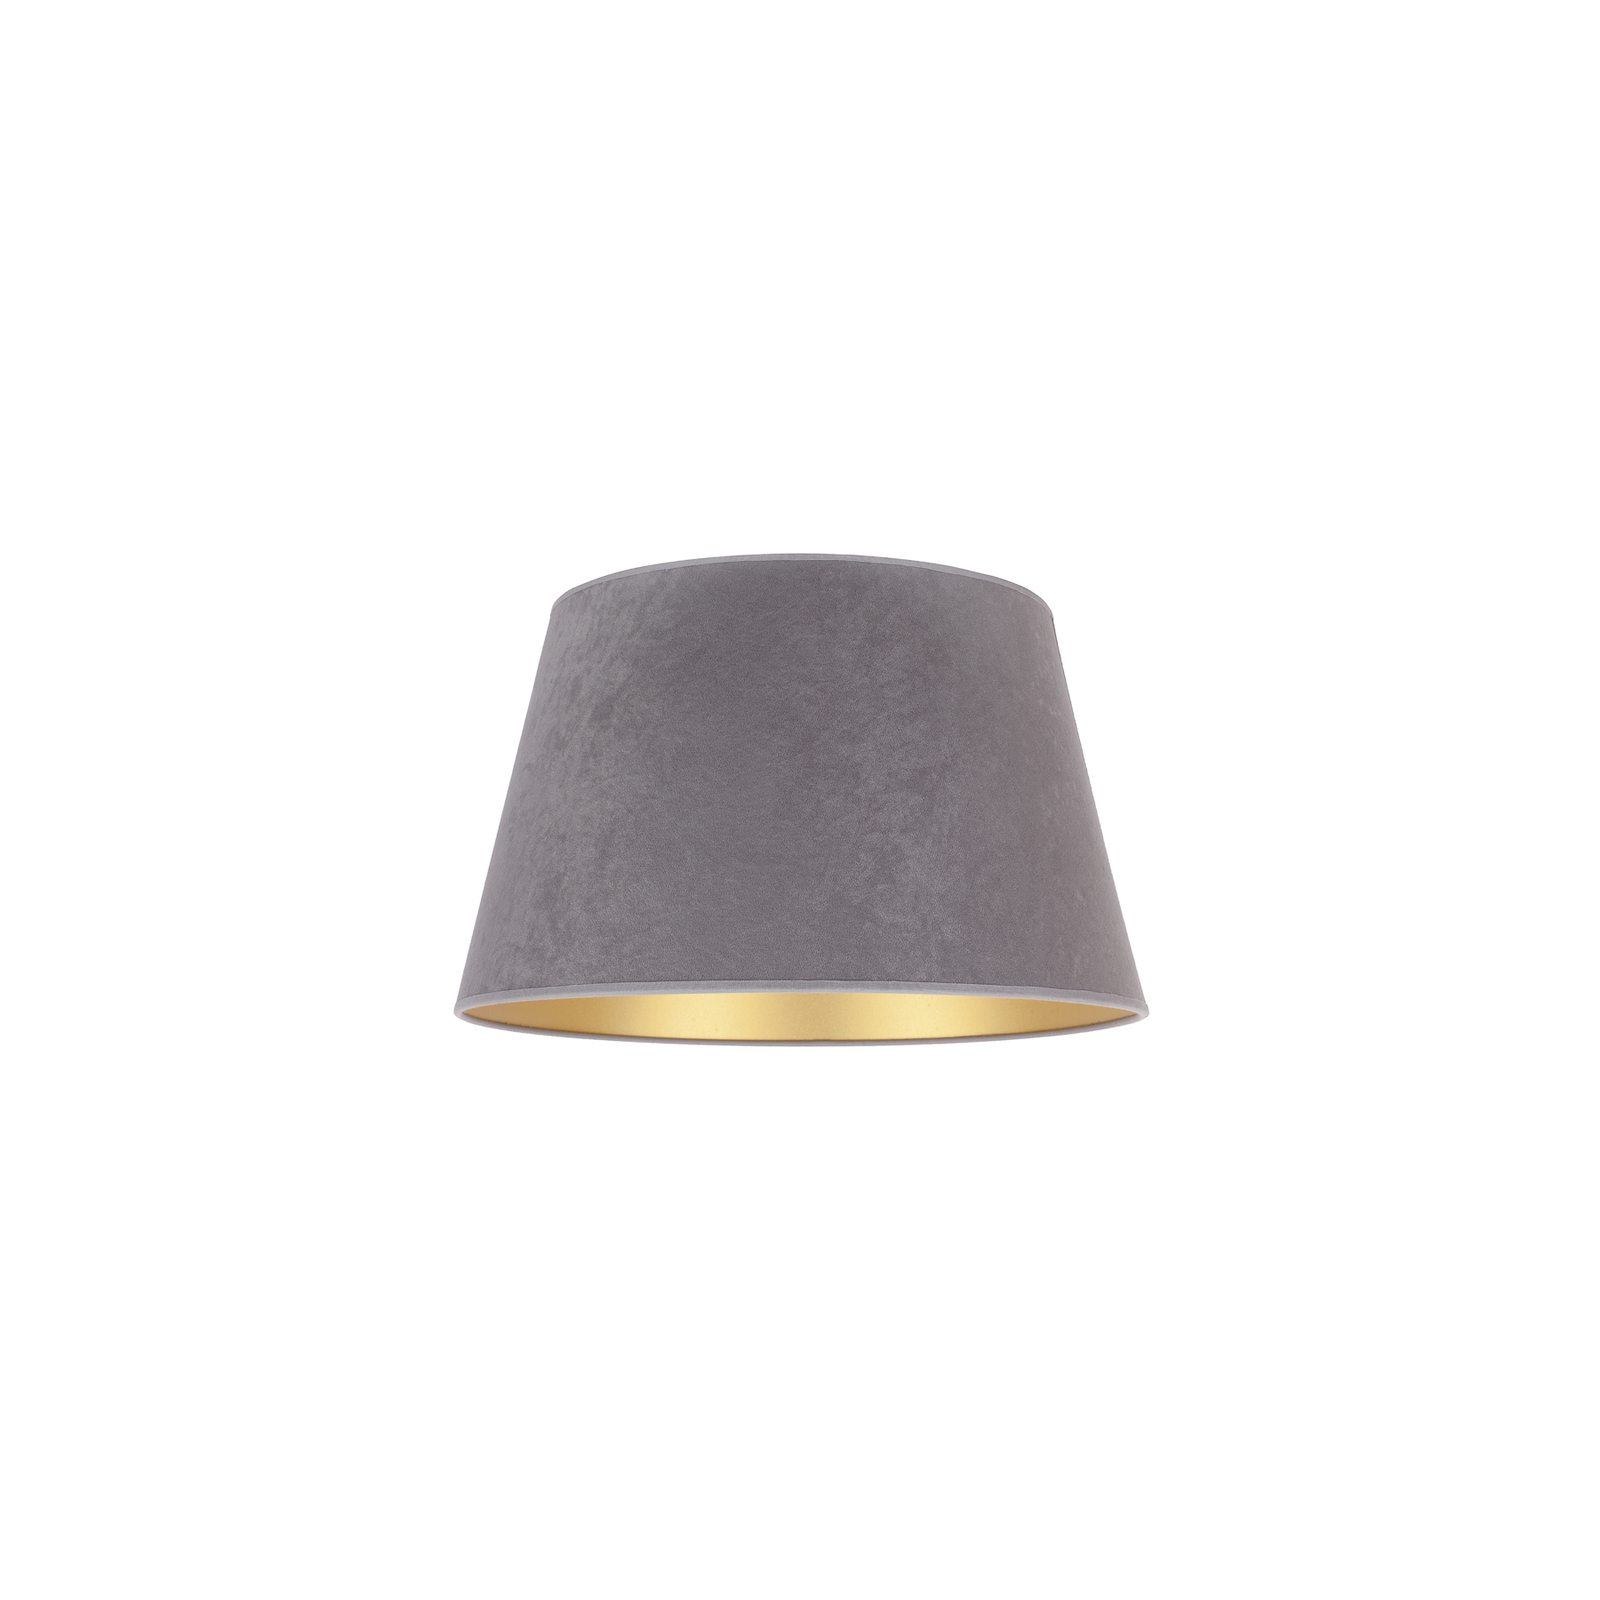 Lampskärm Cone höjd, 18 cm, grå/guld